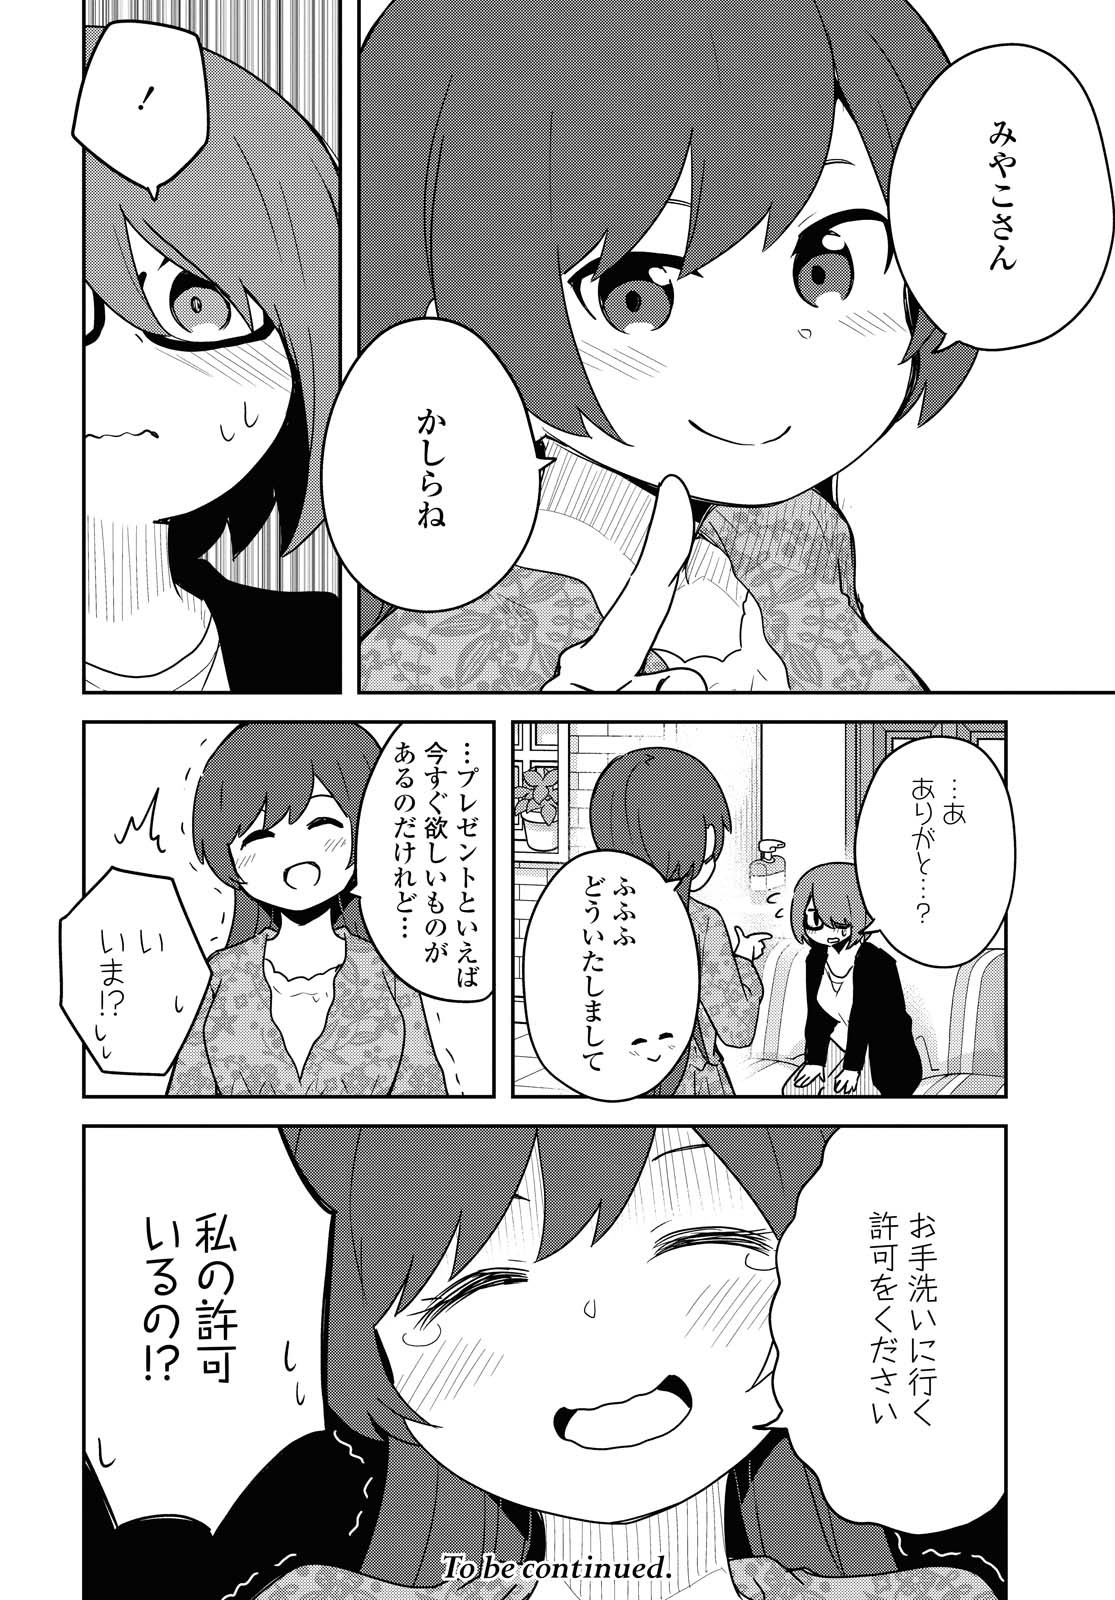 Watashi ni Tenshi ga Maiorita! - Chapter 82 - Page 16